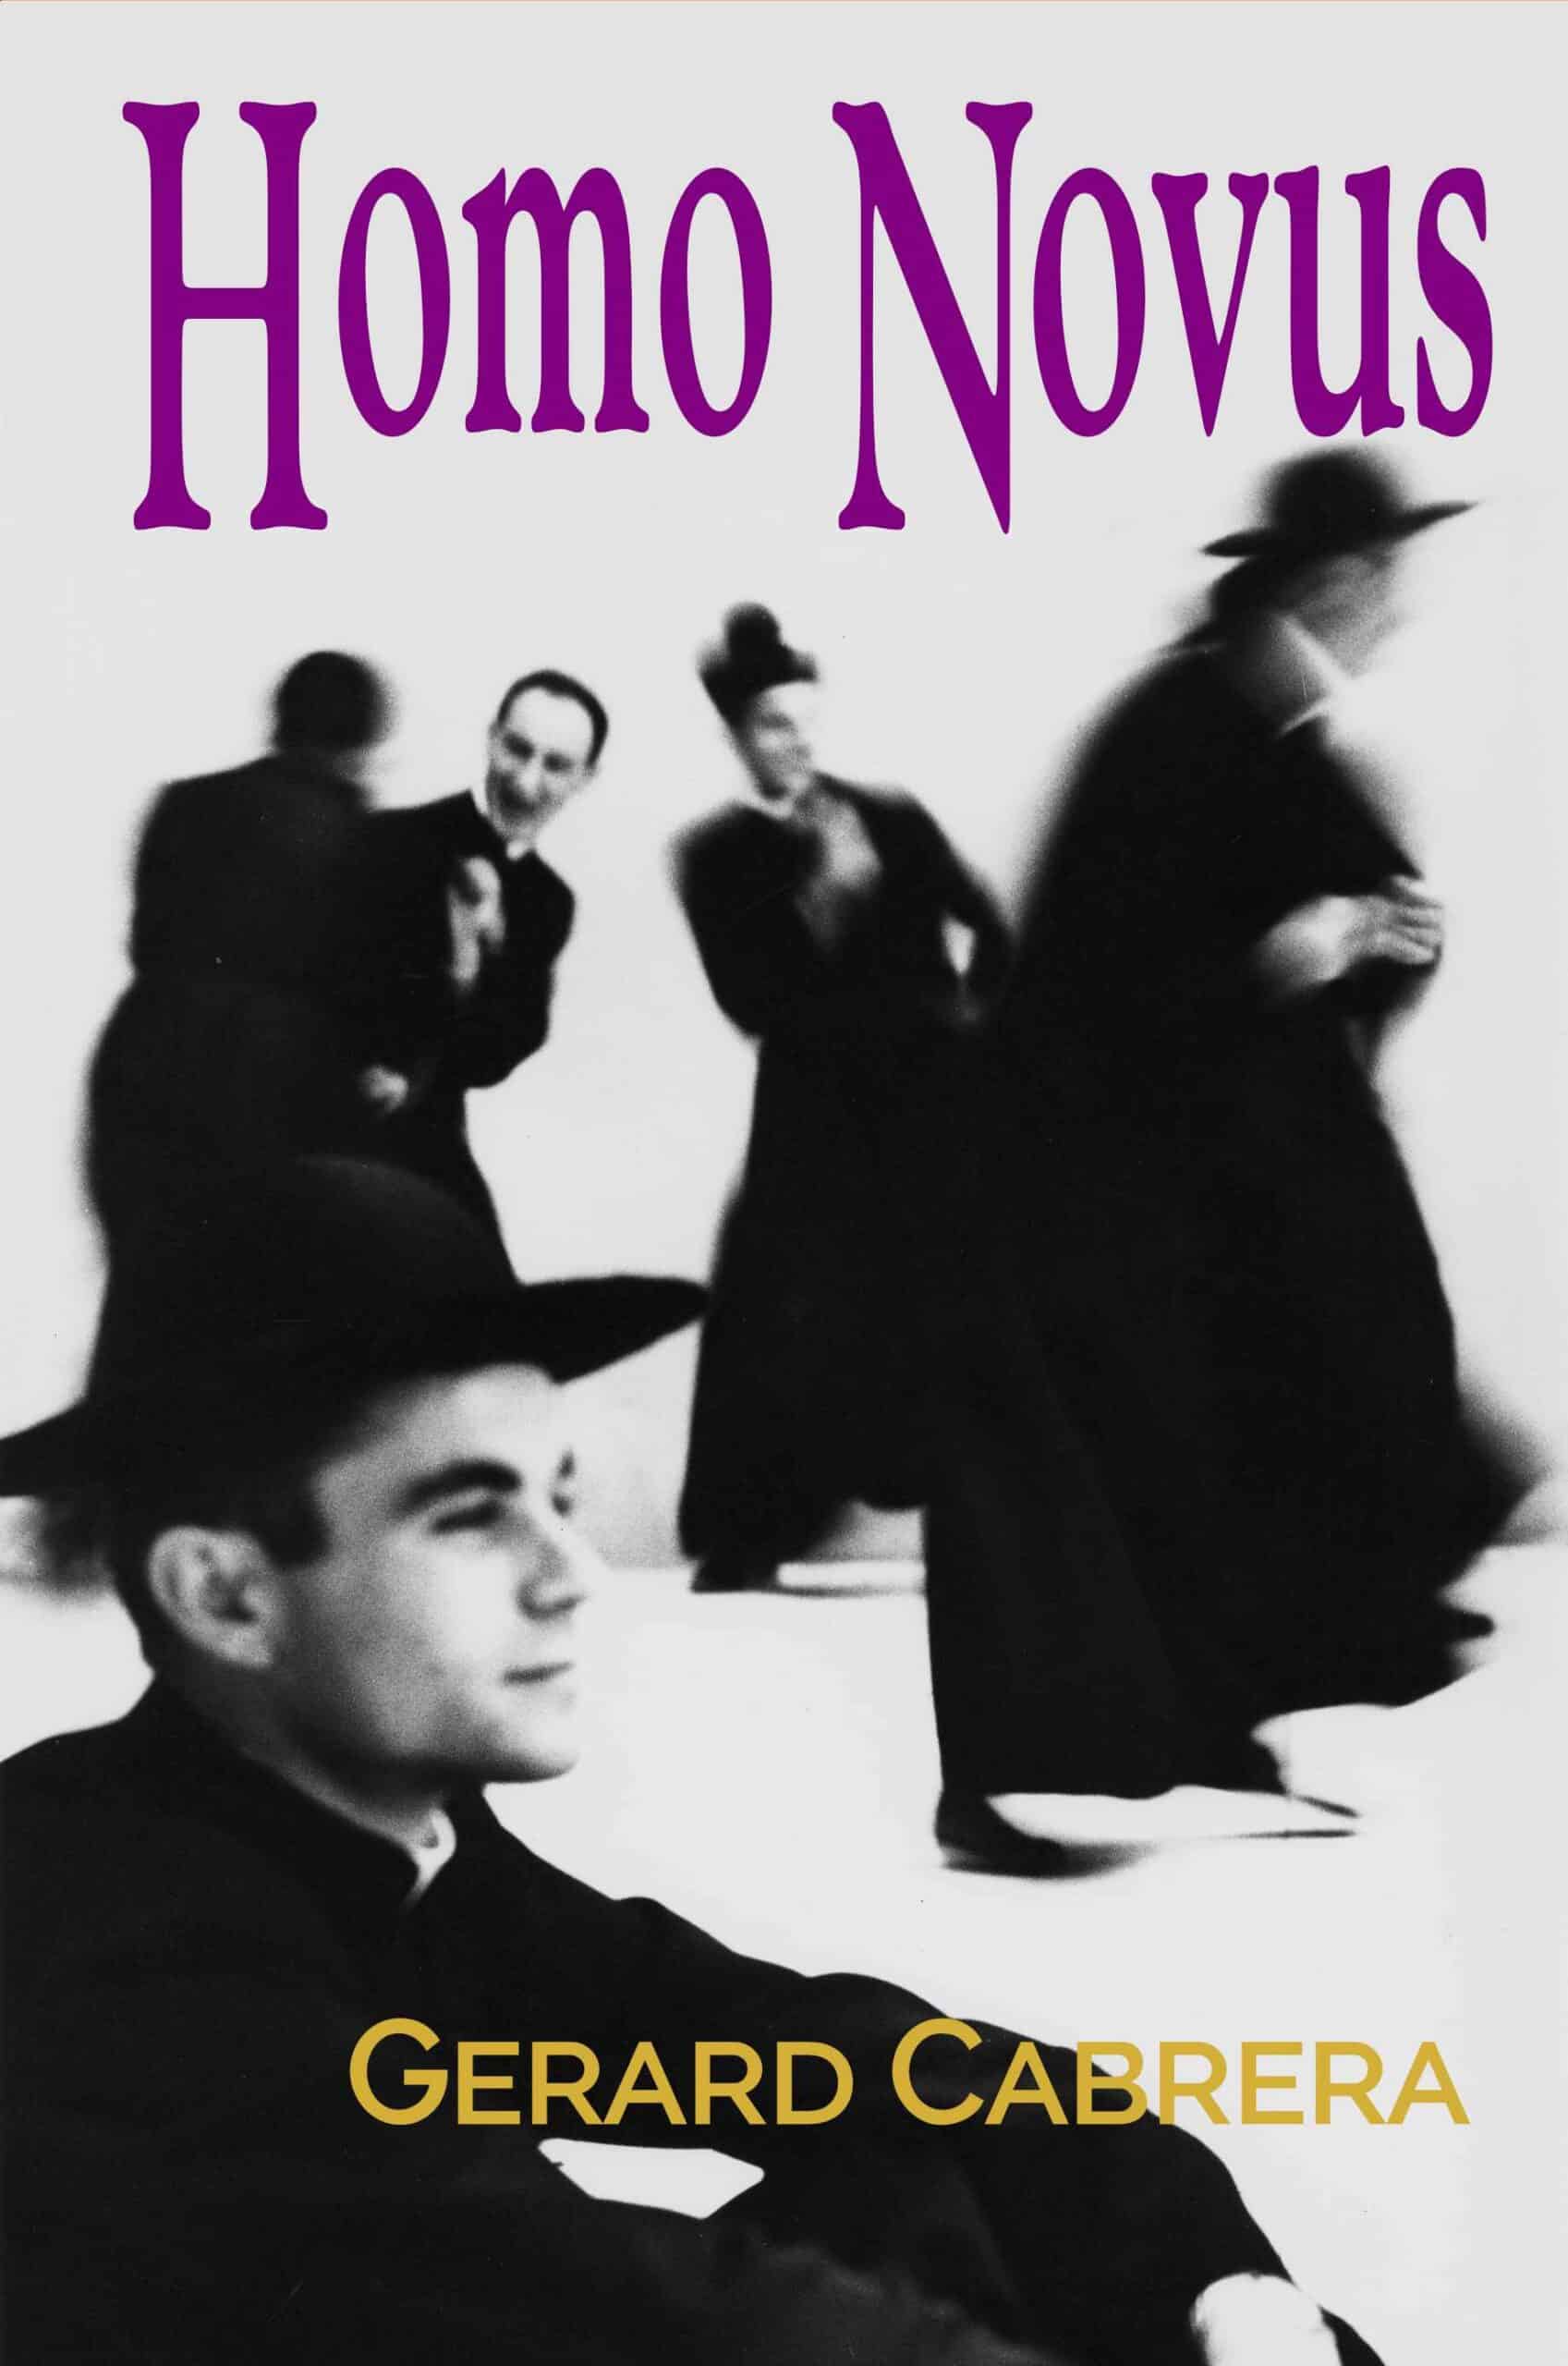 Homo Novus front cover by Gerard Cabrera